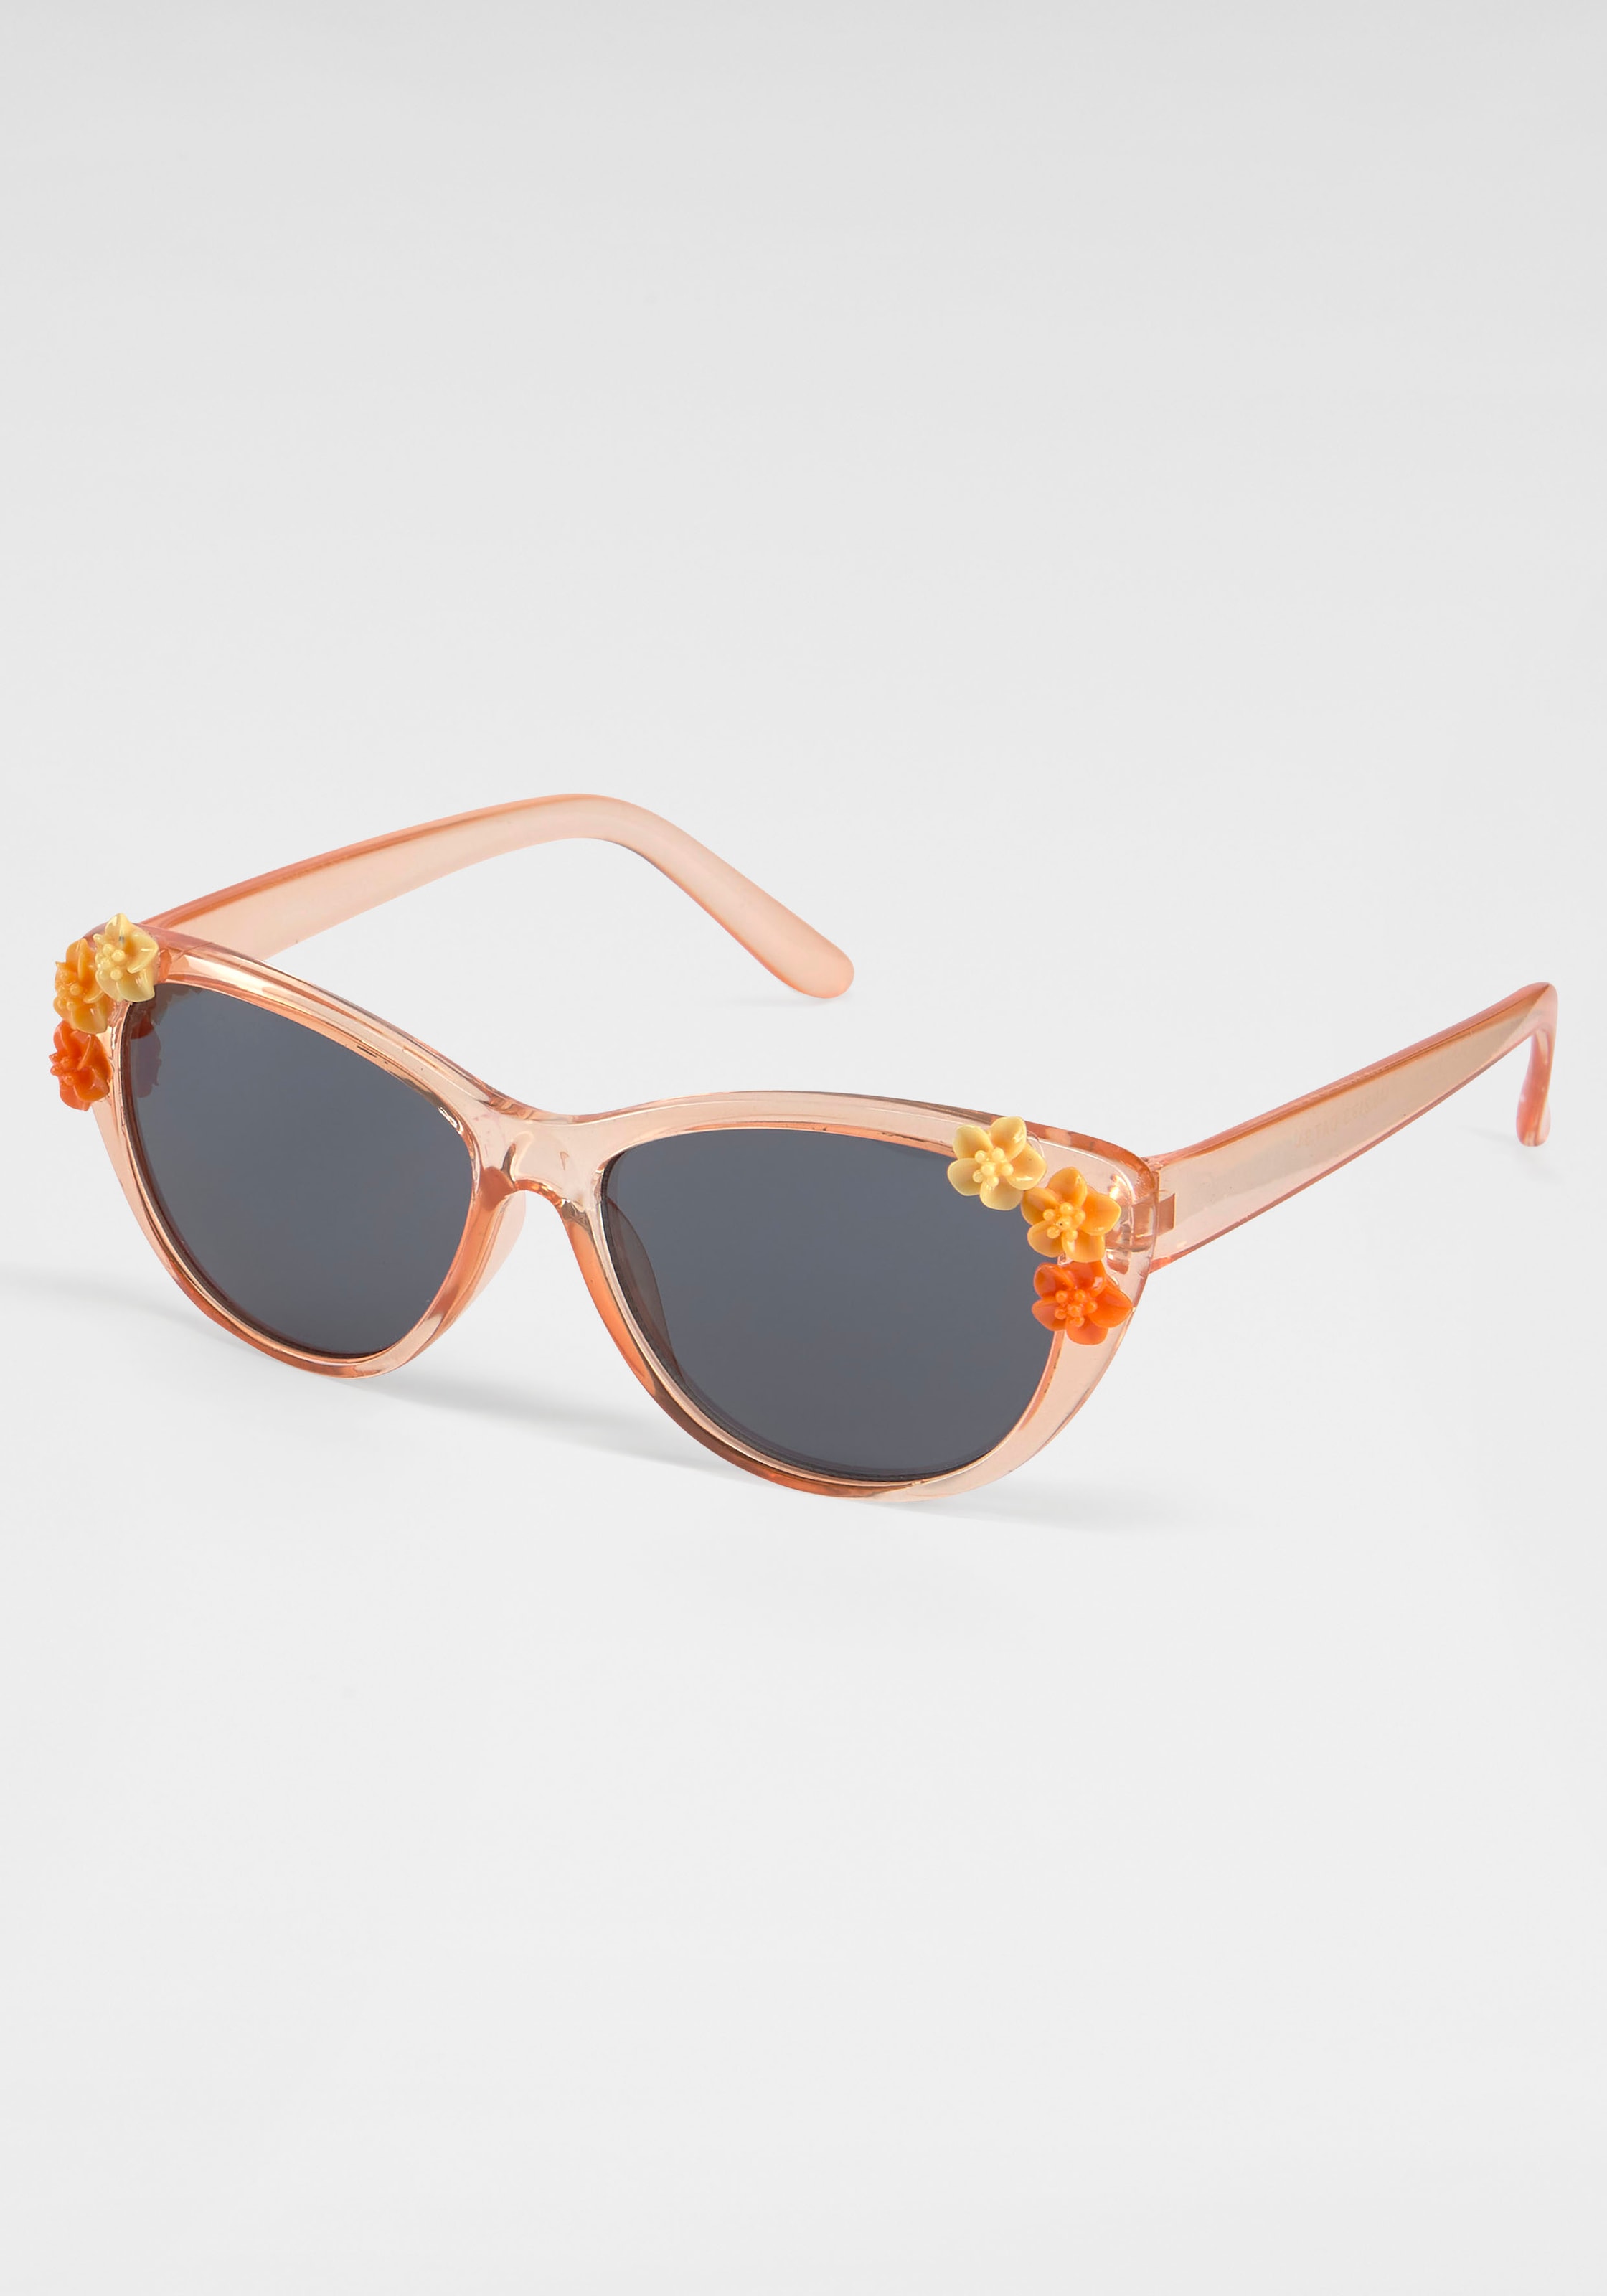 PRIMETTA Eyewear Sonnenbrille, mit Blumen-Applikation